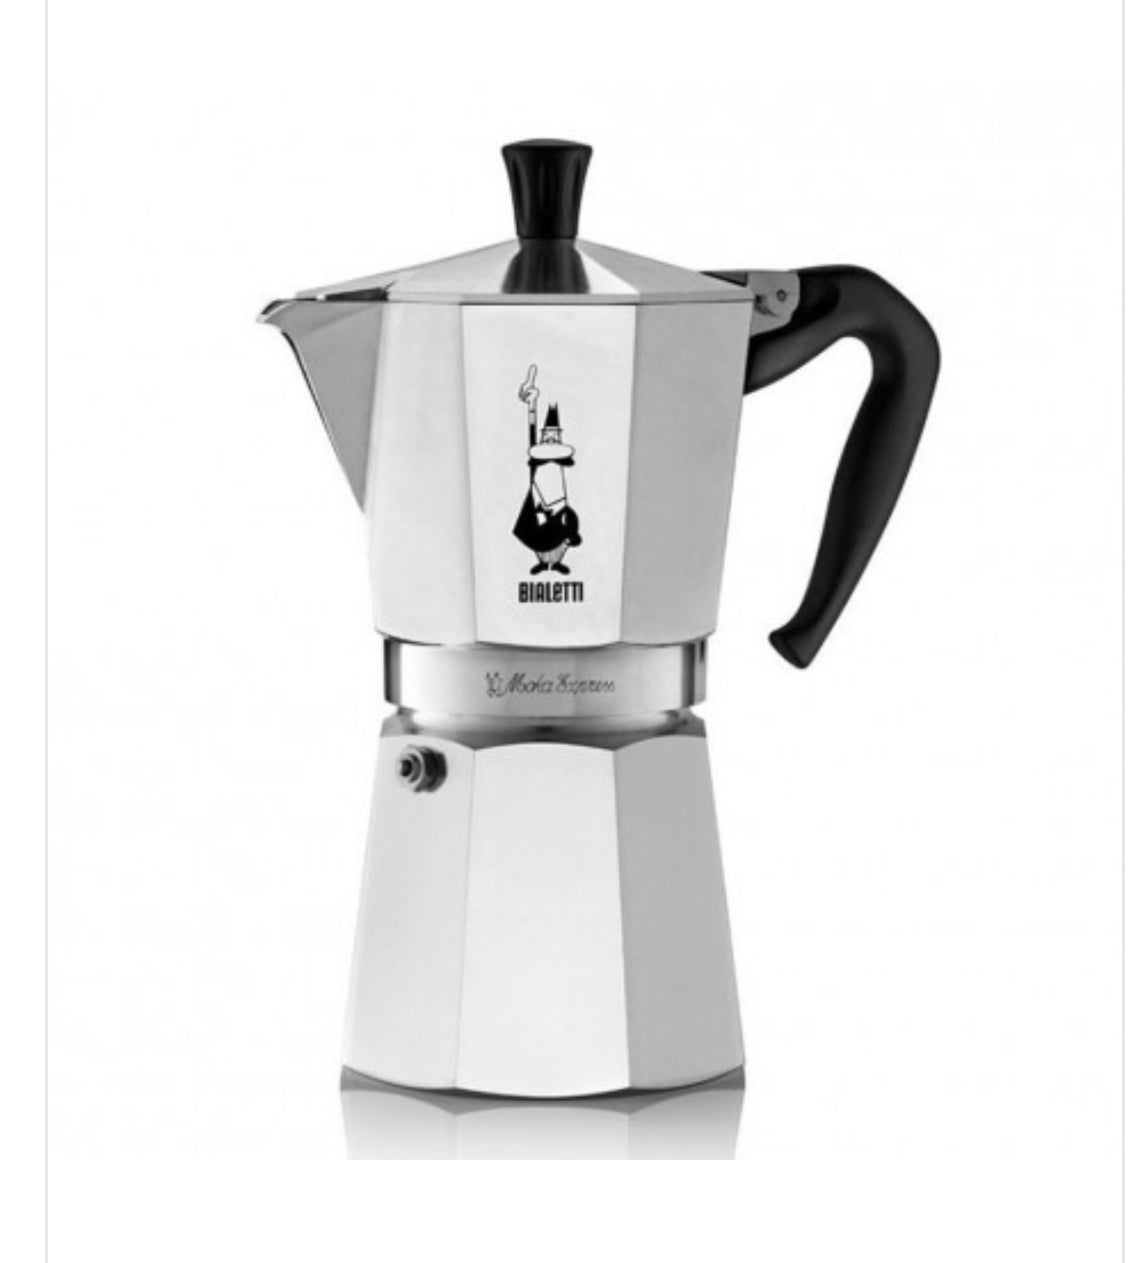 Bialetti Moka Pot Express Coffee Maker - 12 cups